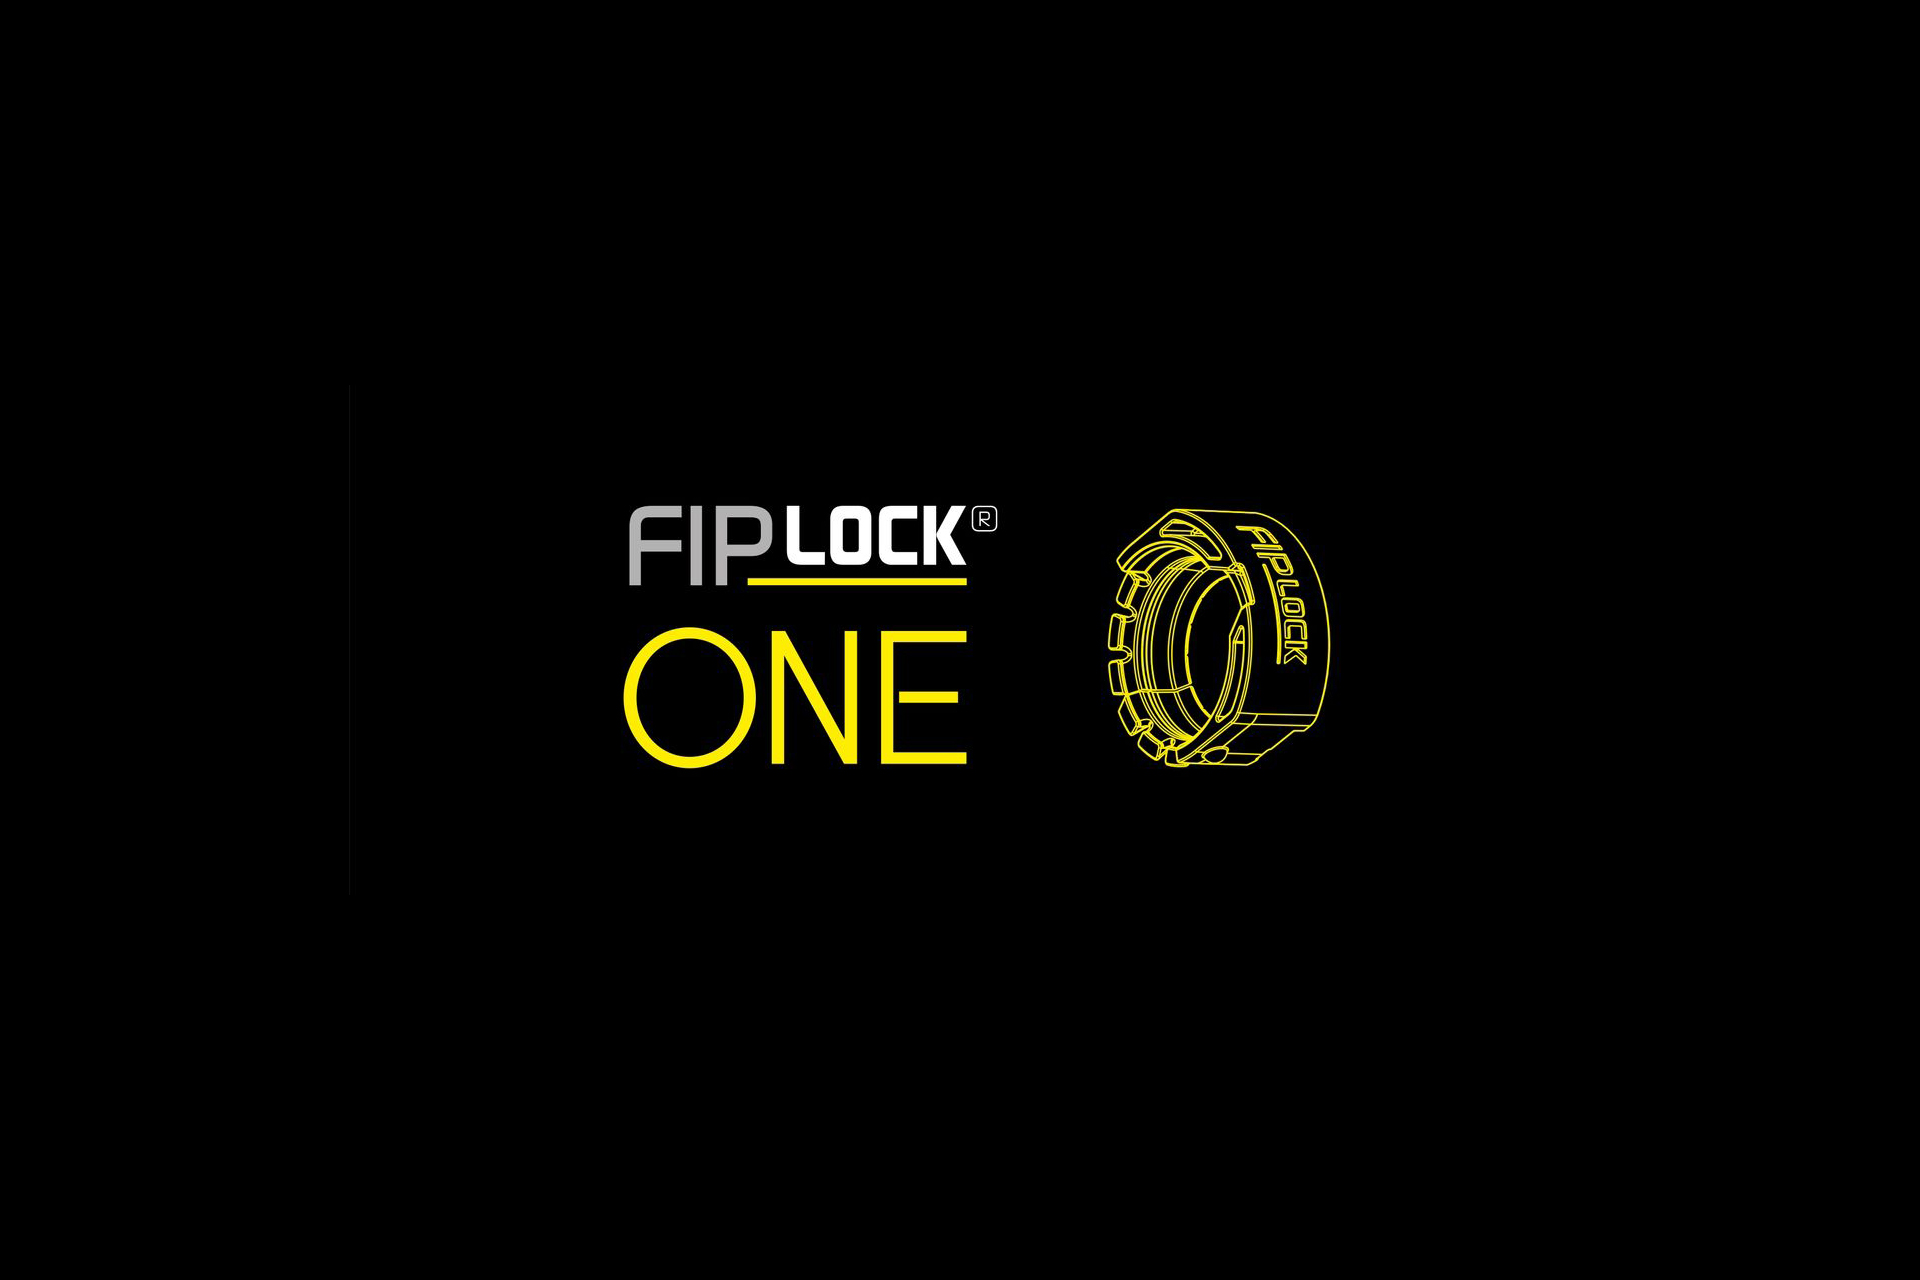 FIPlock ONE